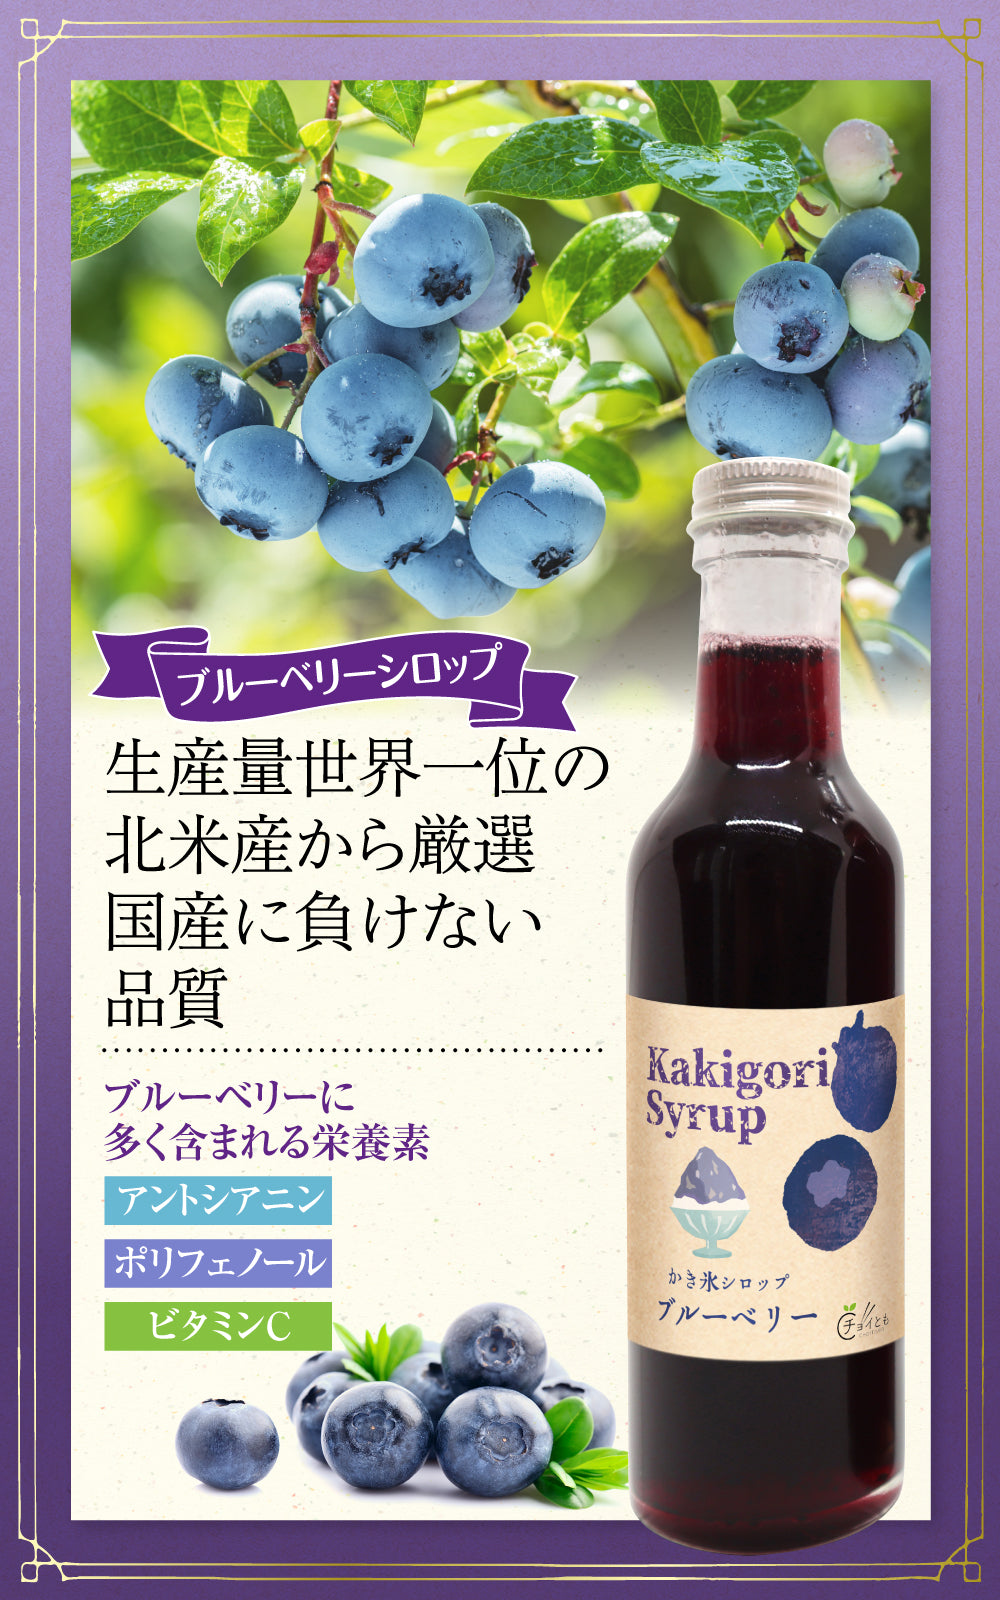 Choitomo かき氷シロップ いちご・ブルーベリー・抹茶の3種セット